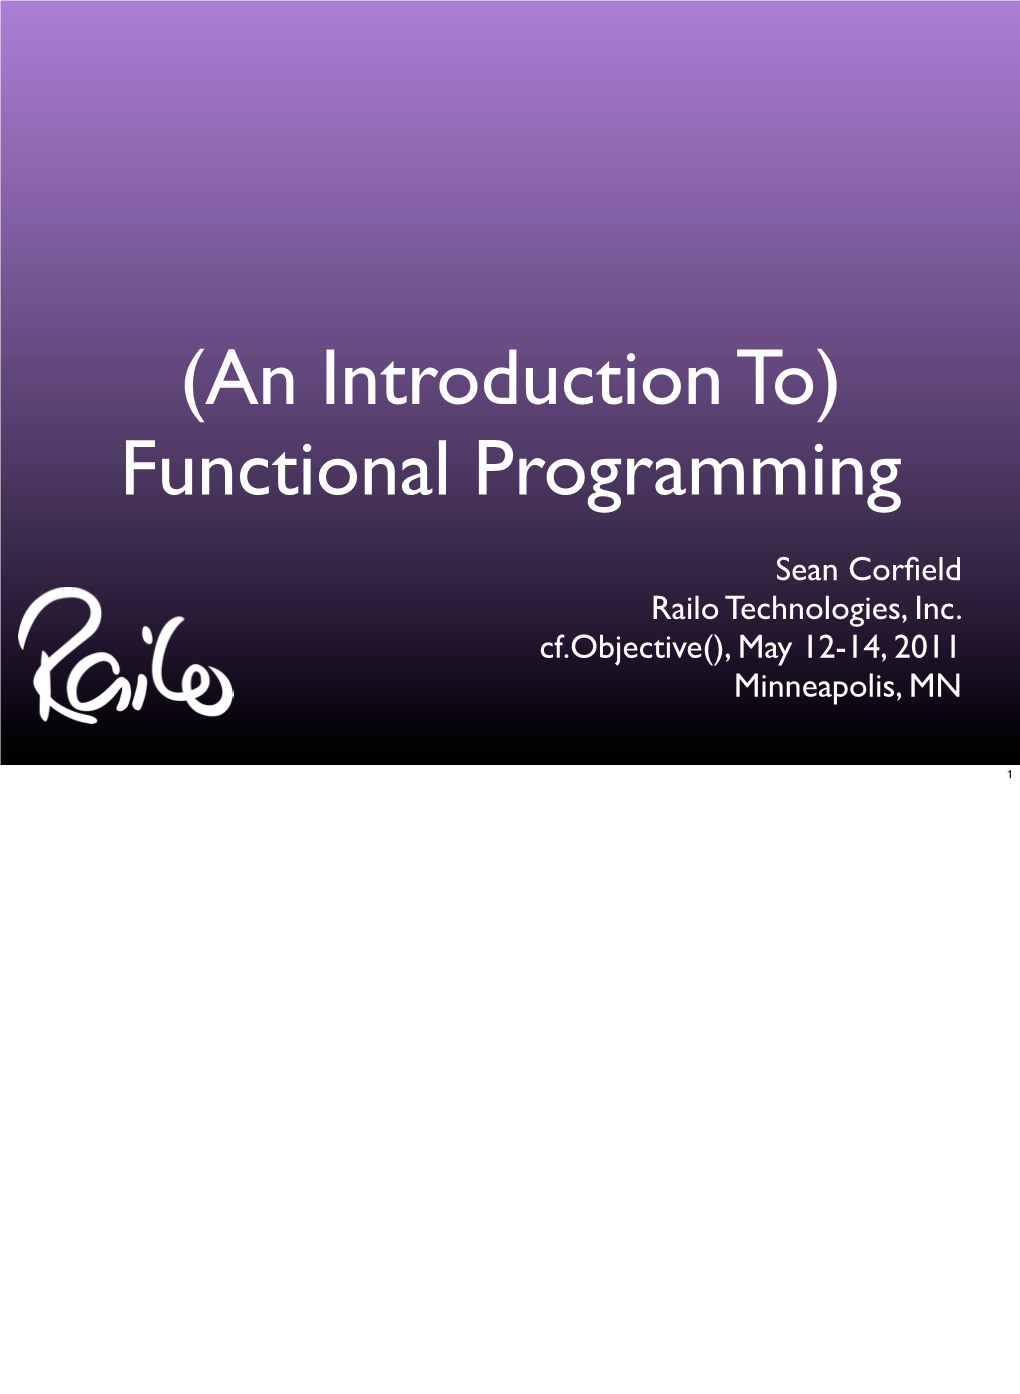 Functional Programming Slides